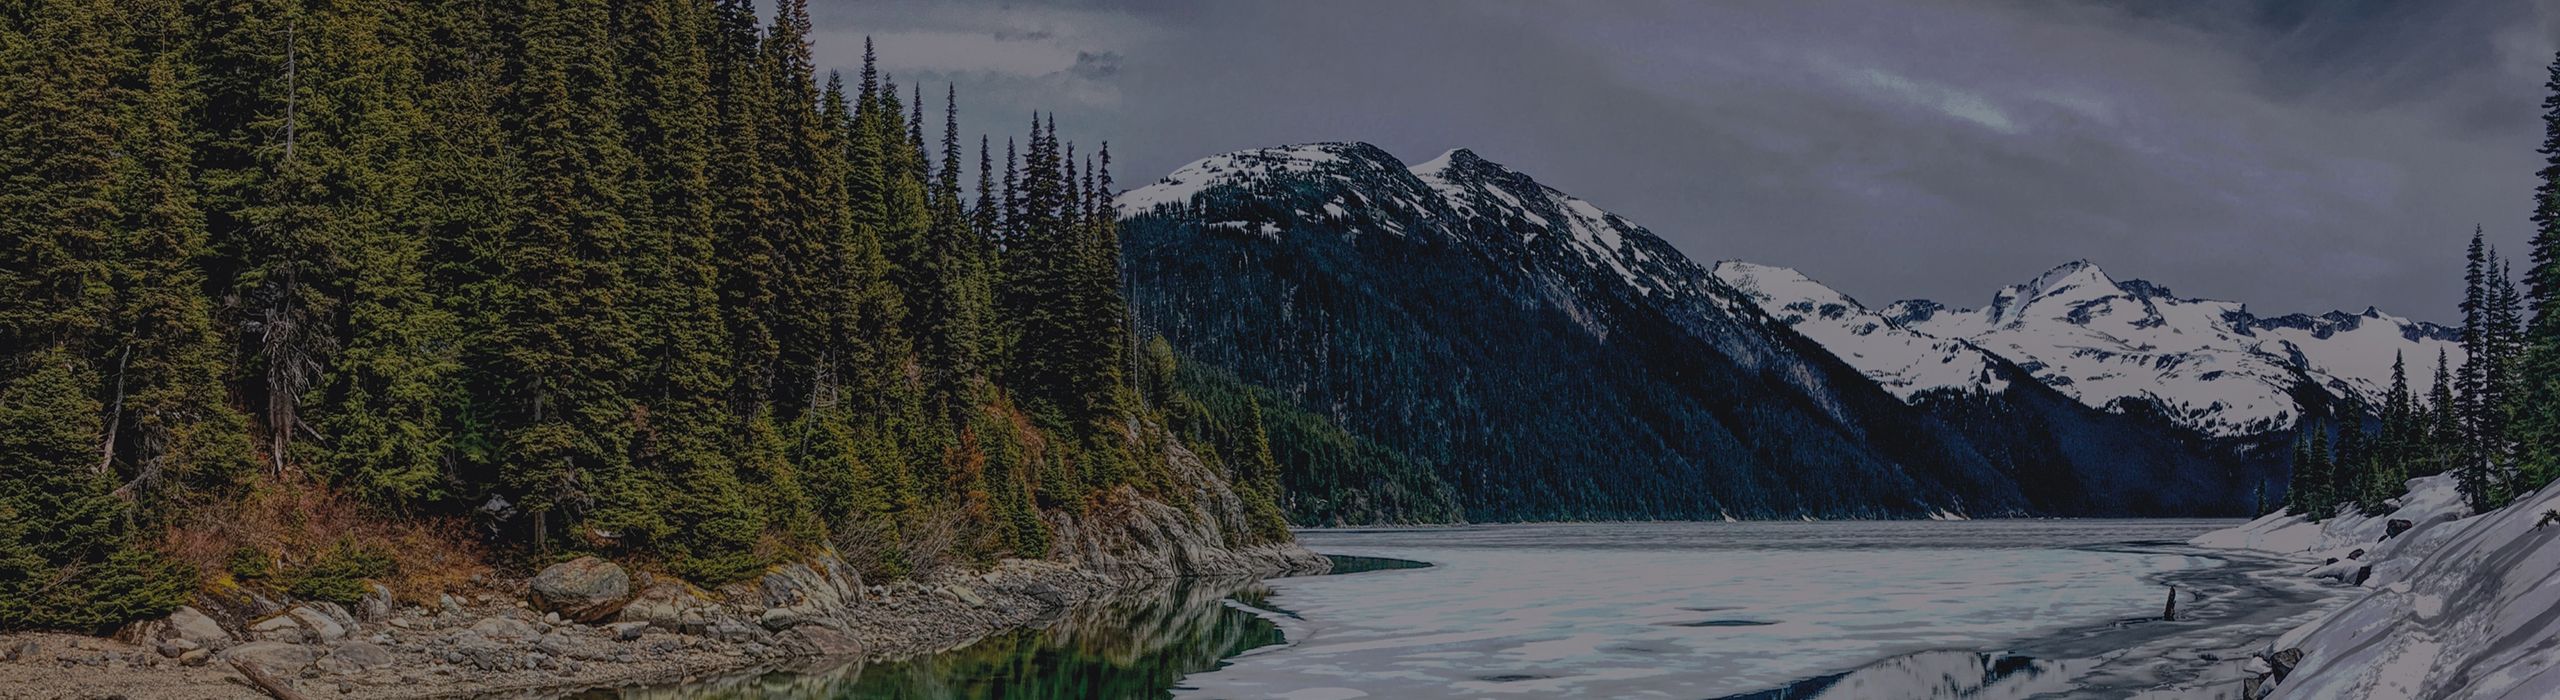 British Columbia Landscape